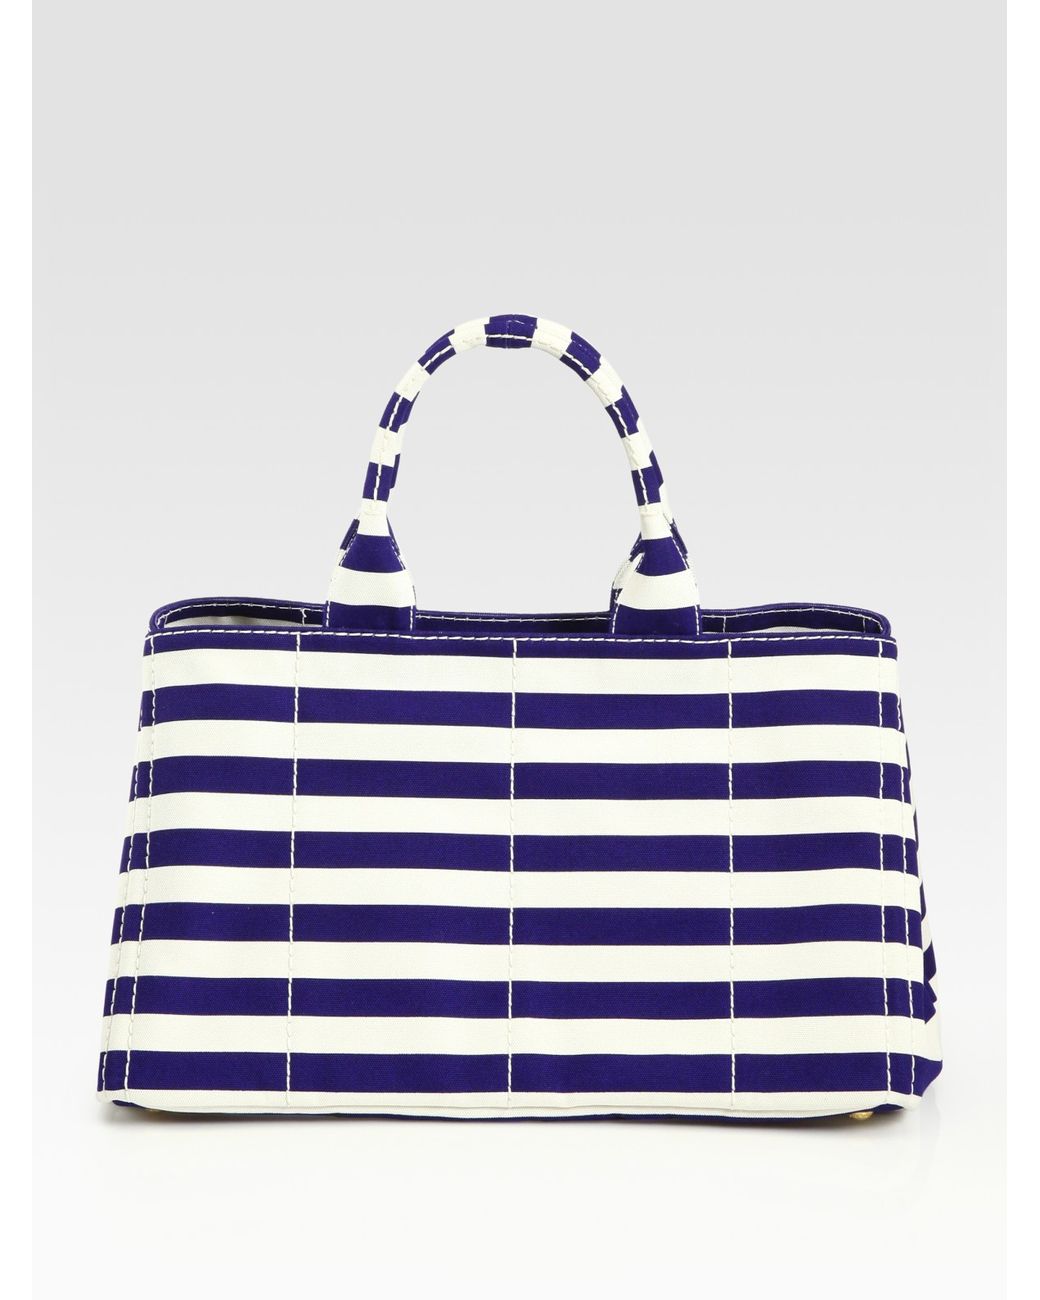 Prada Stripe Canvas Tote Bag in Blue | Lyst